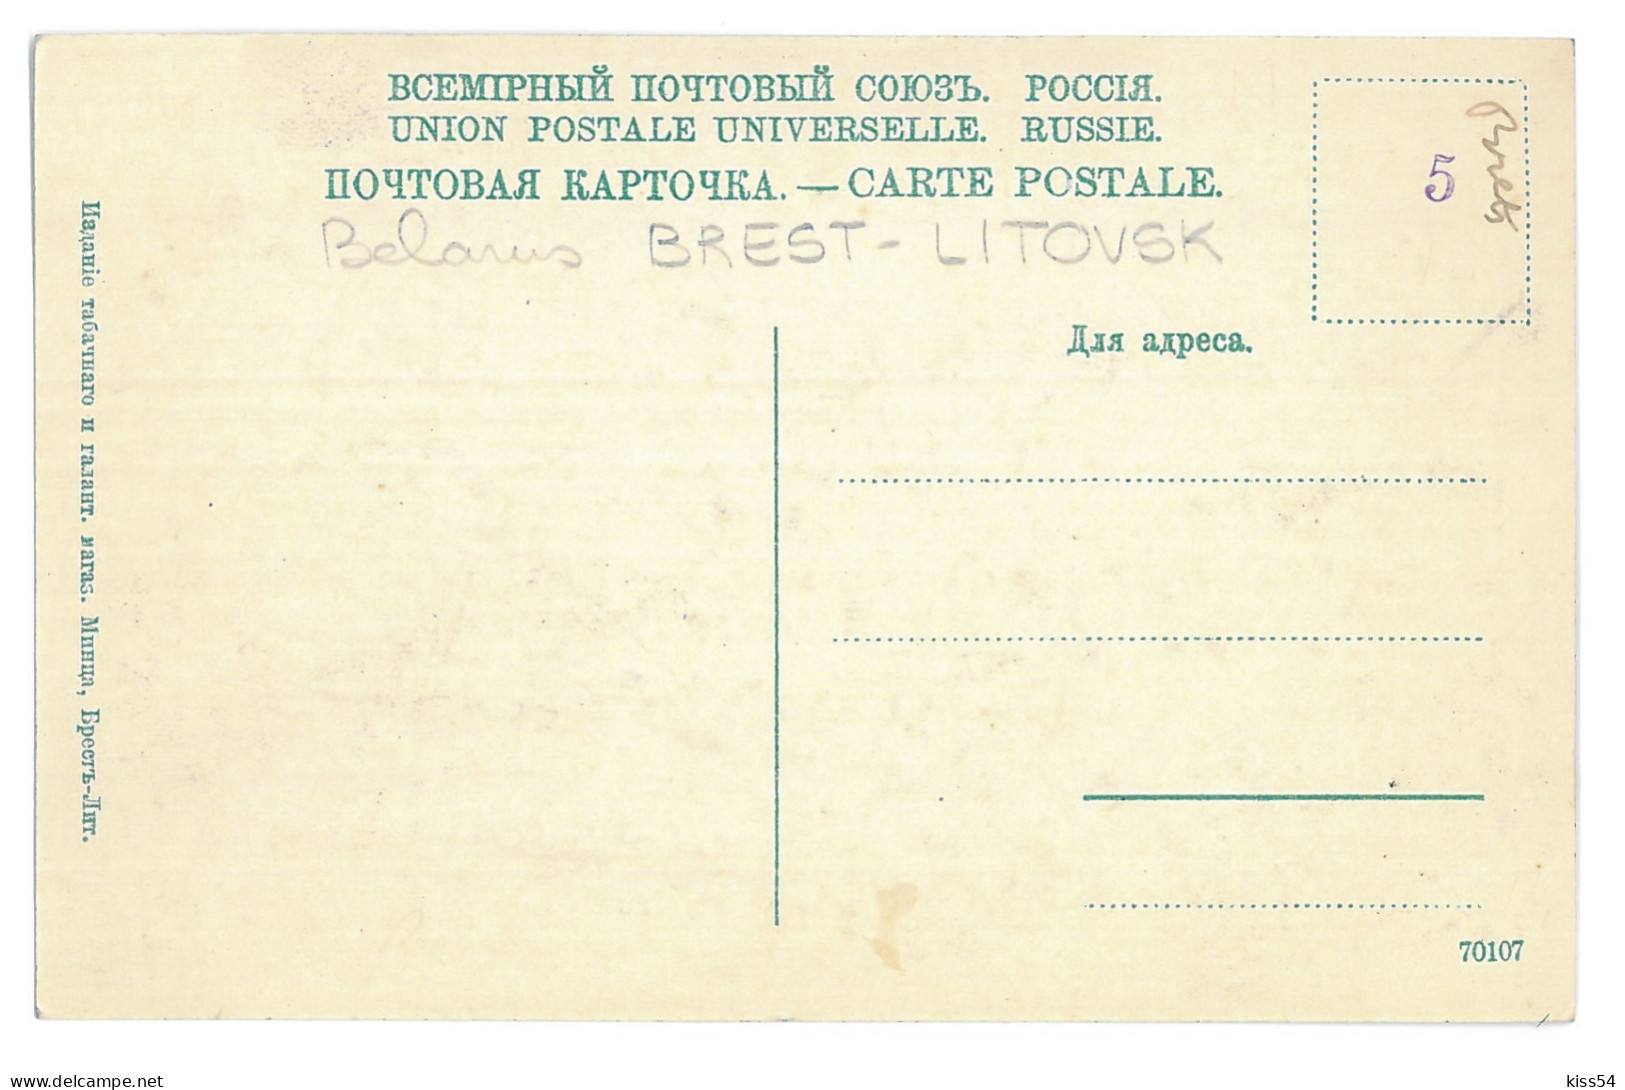 BL 38 - 15420 BREST LITOWSK, Belarus - Old Postcard - Unused - Belarus